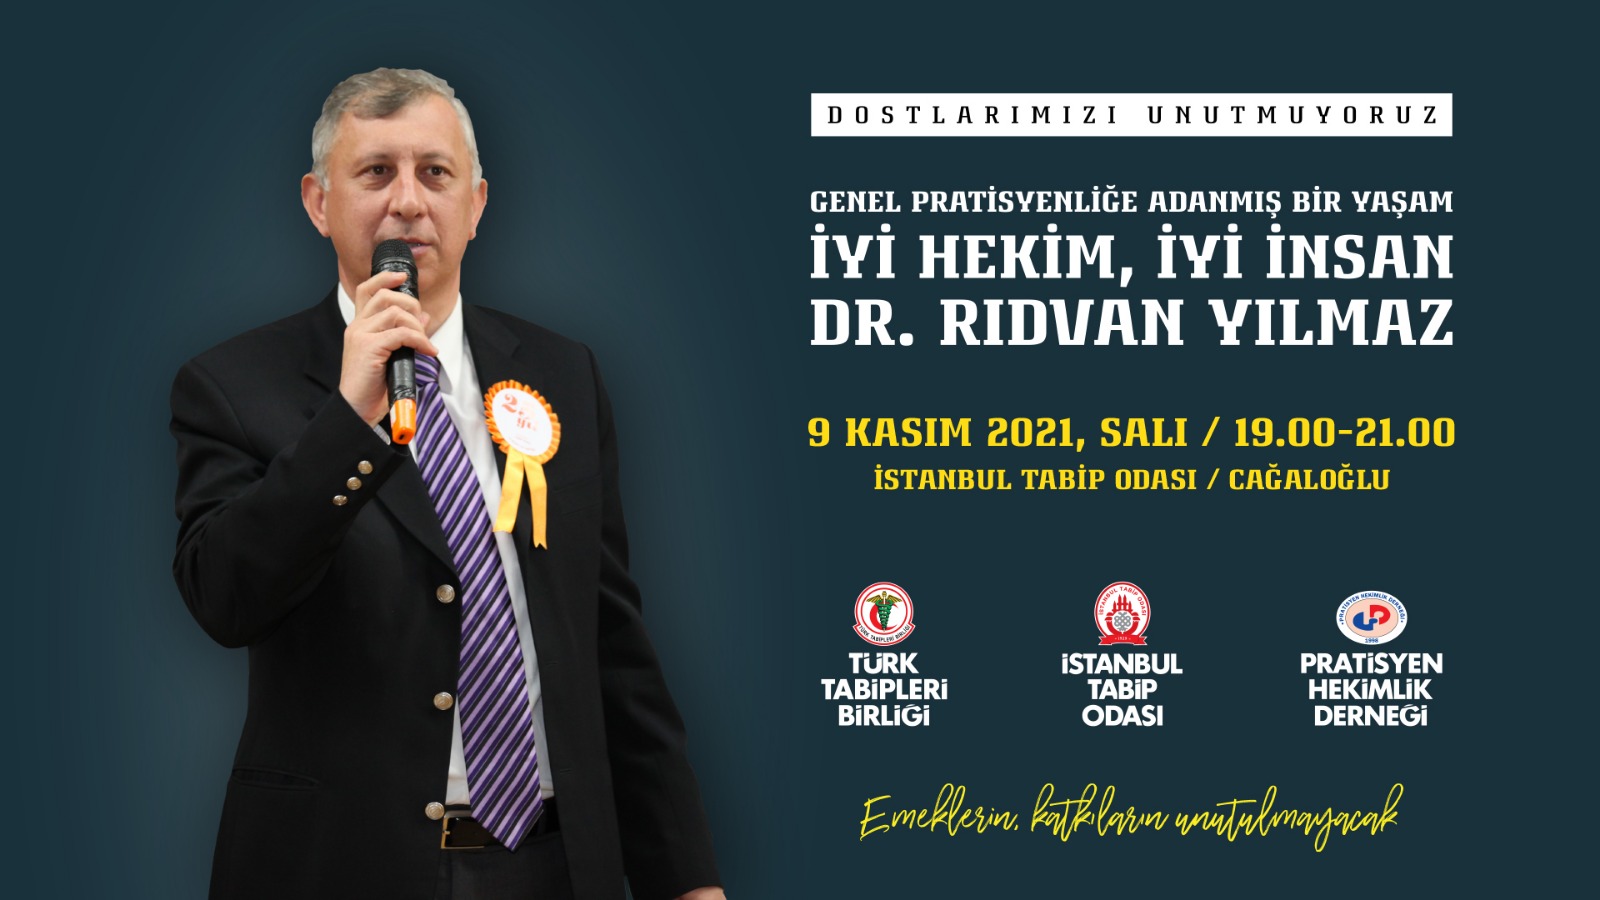 DR.RIDVAN YILMAZ